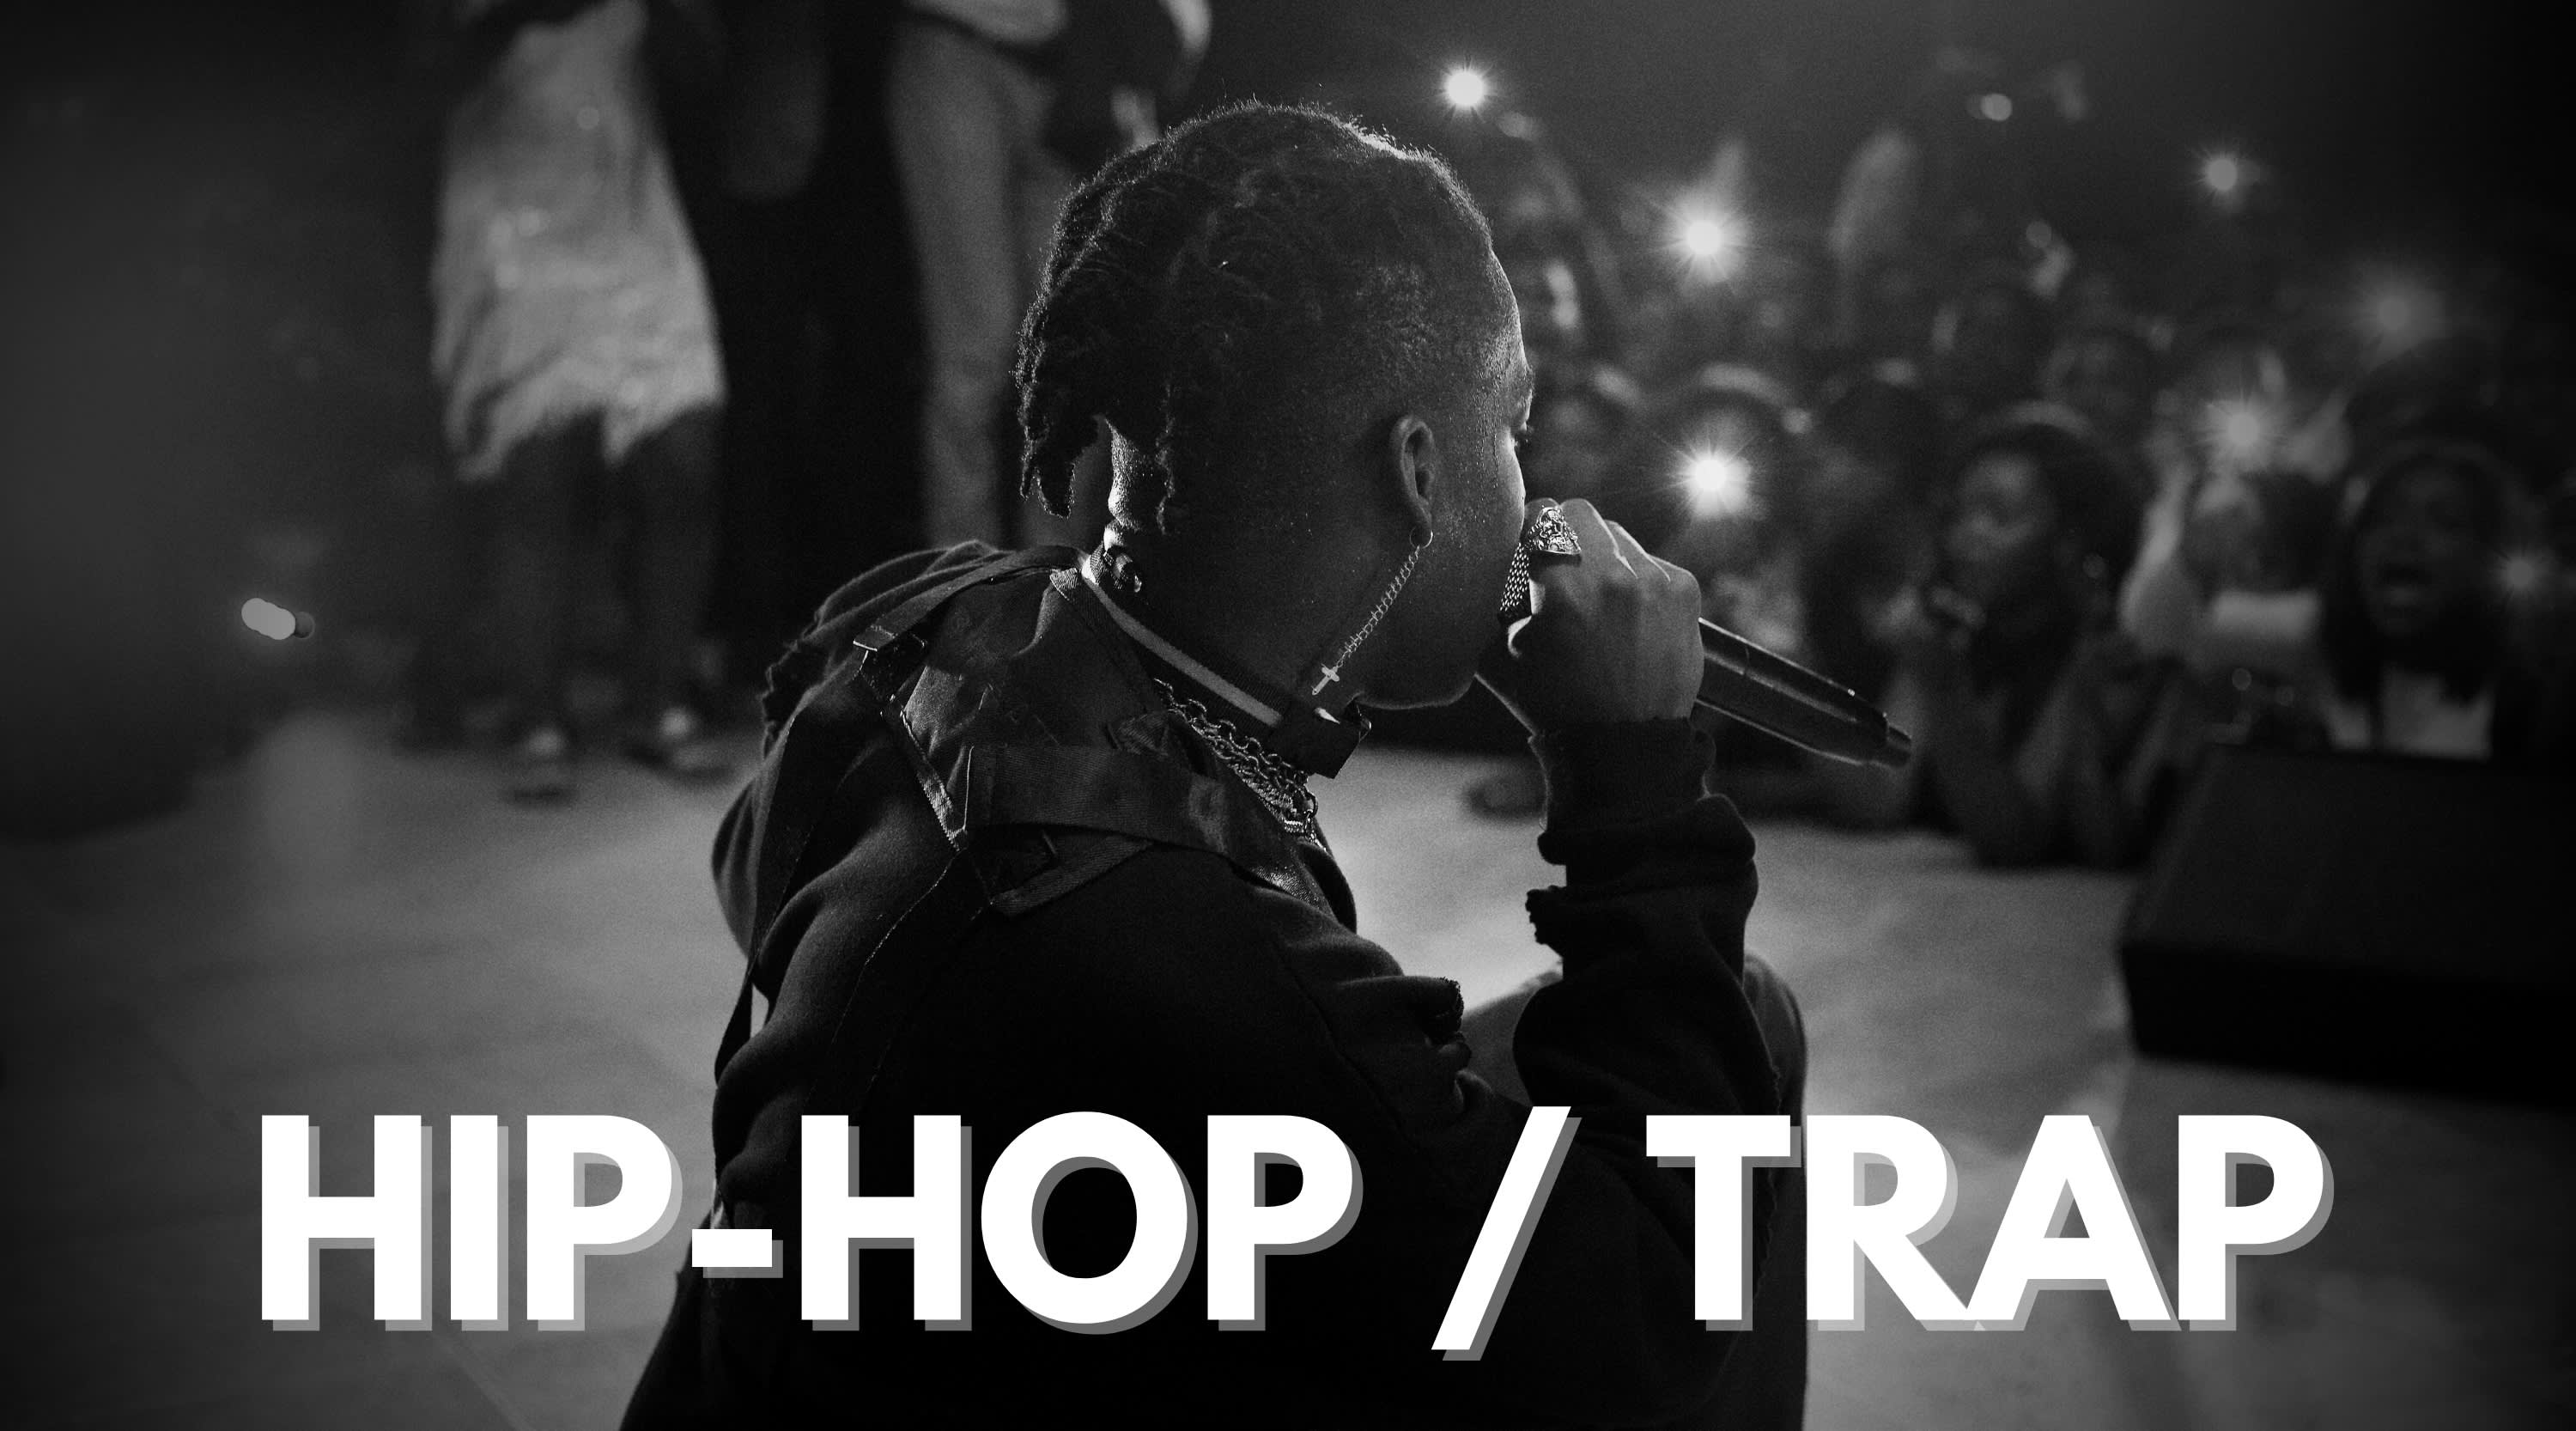 Hip-Hop / Trap